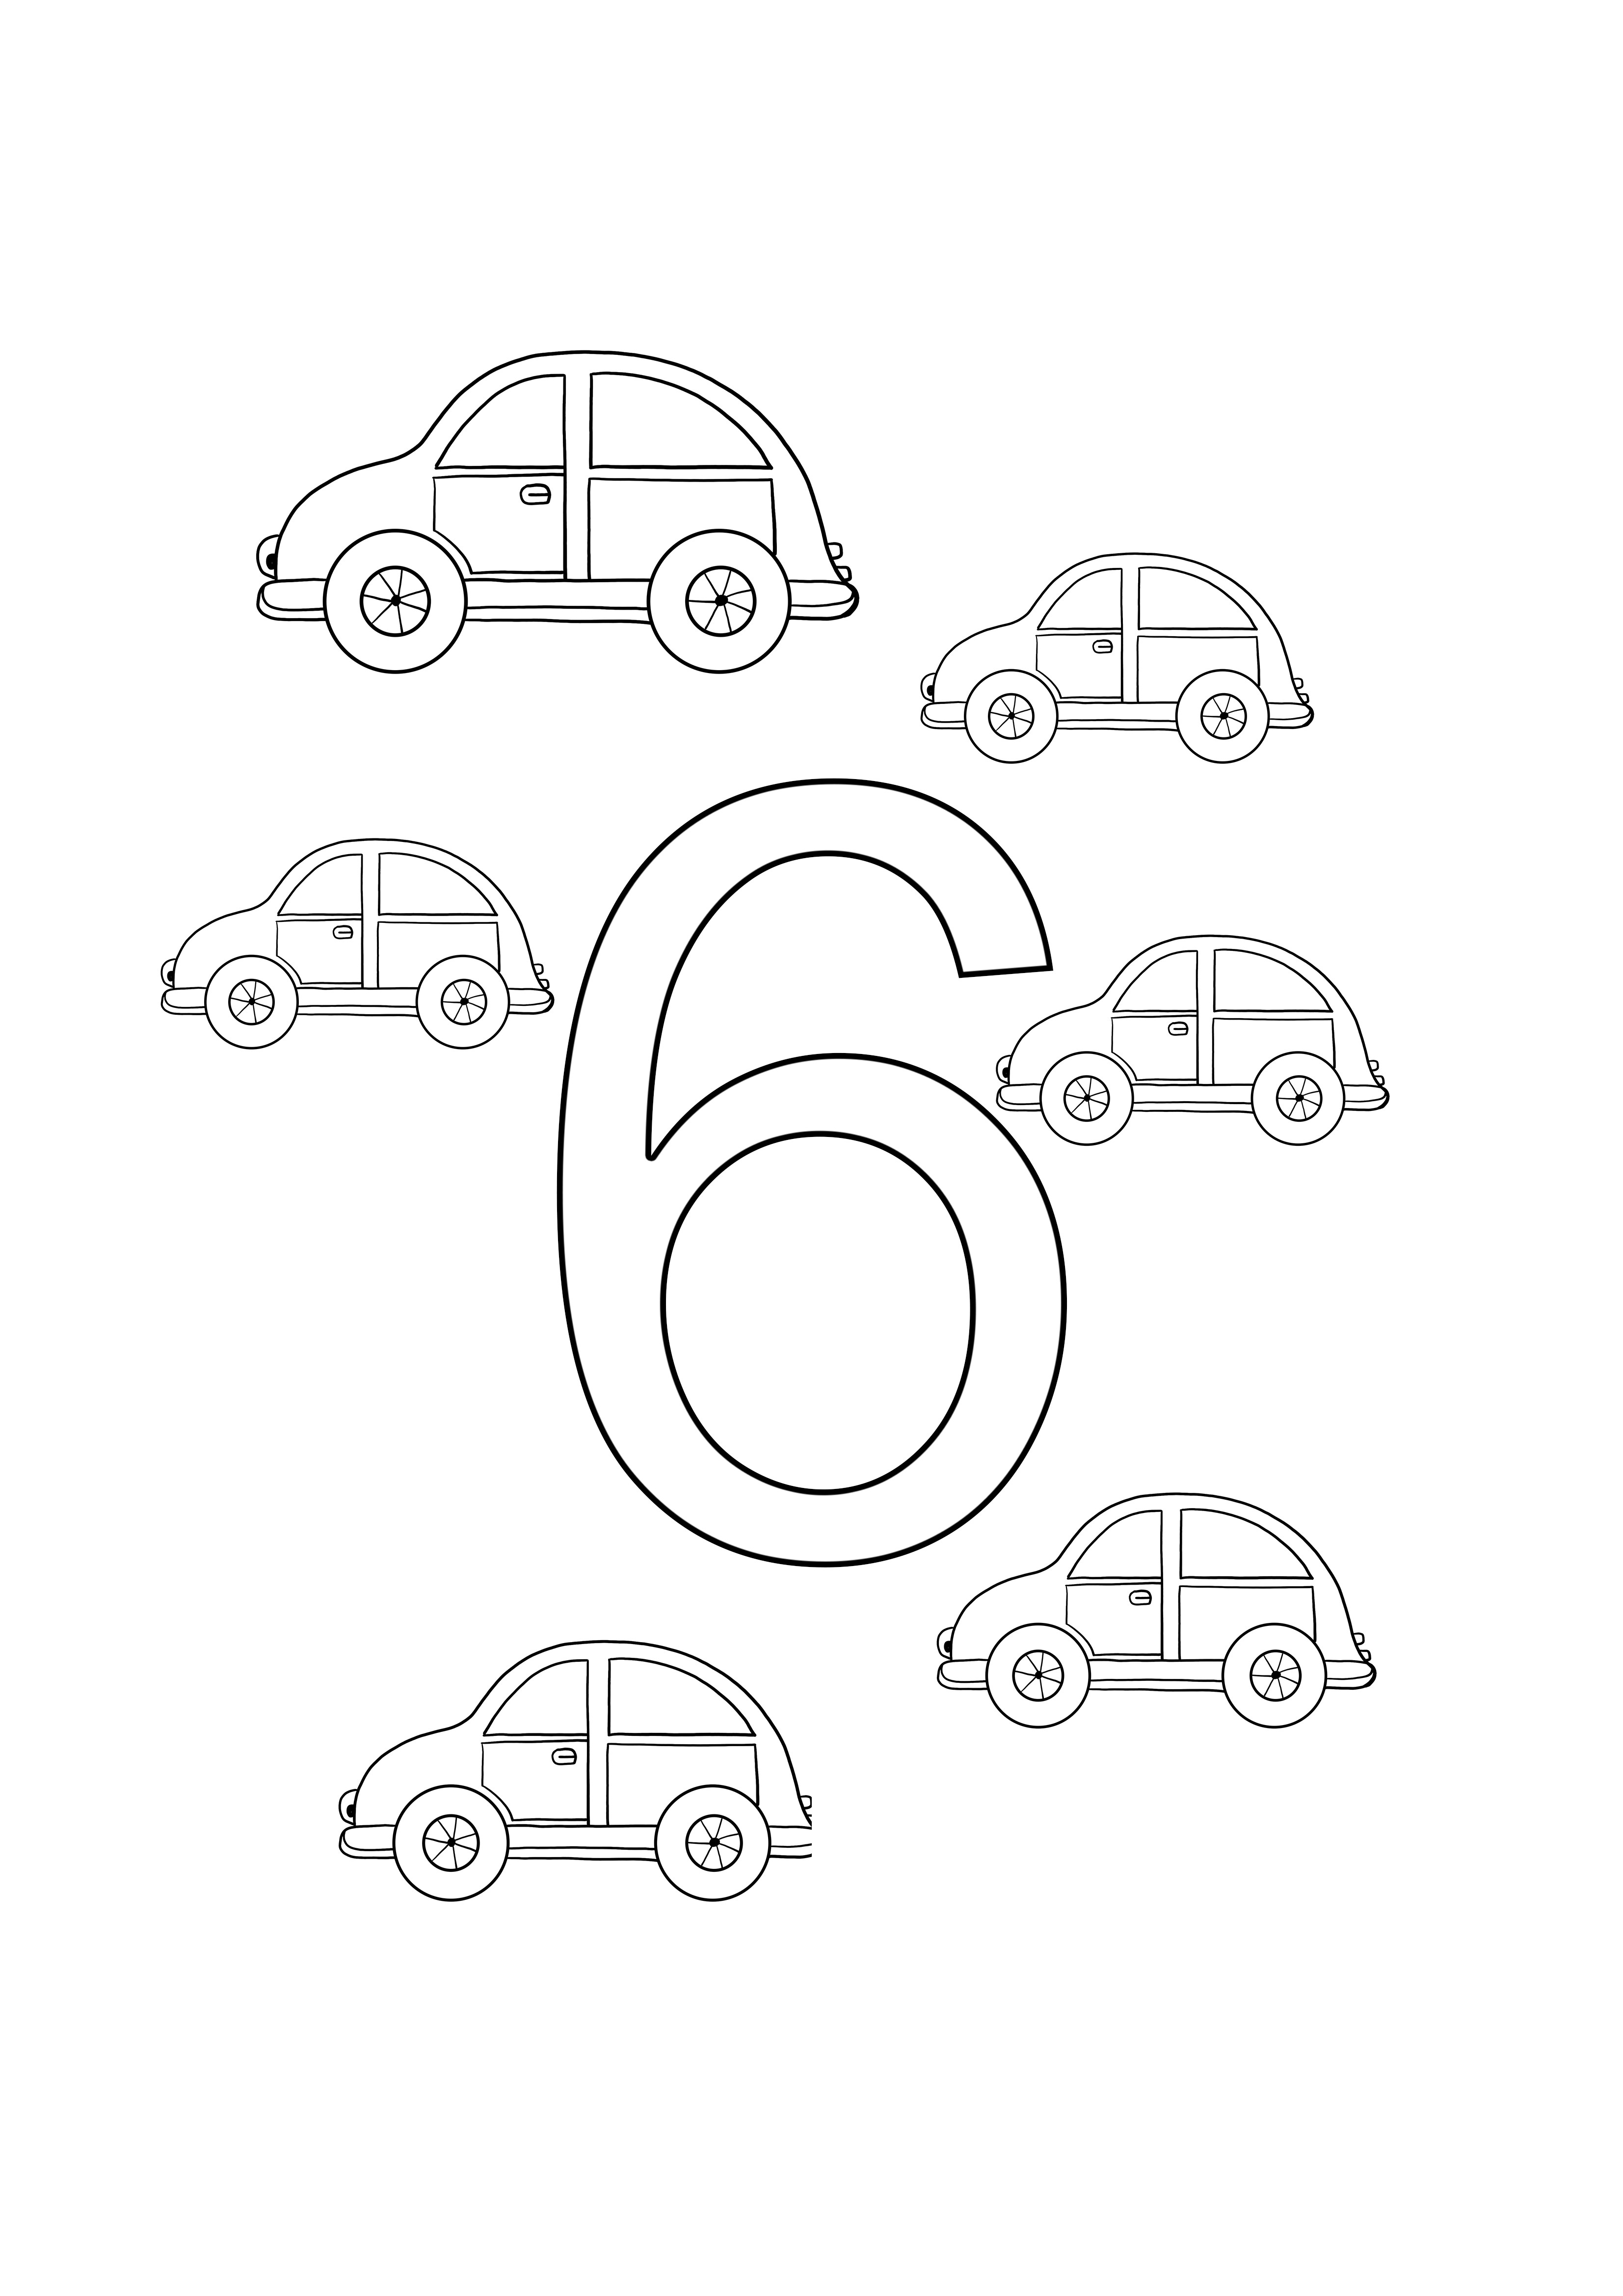 Sechs Autonummern zum Ausmalen und kostenloses Druckblatt